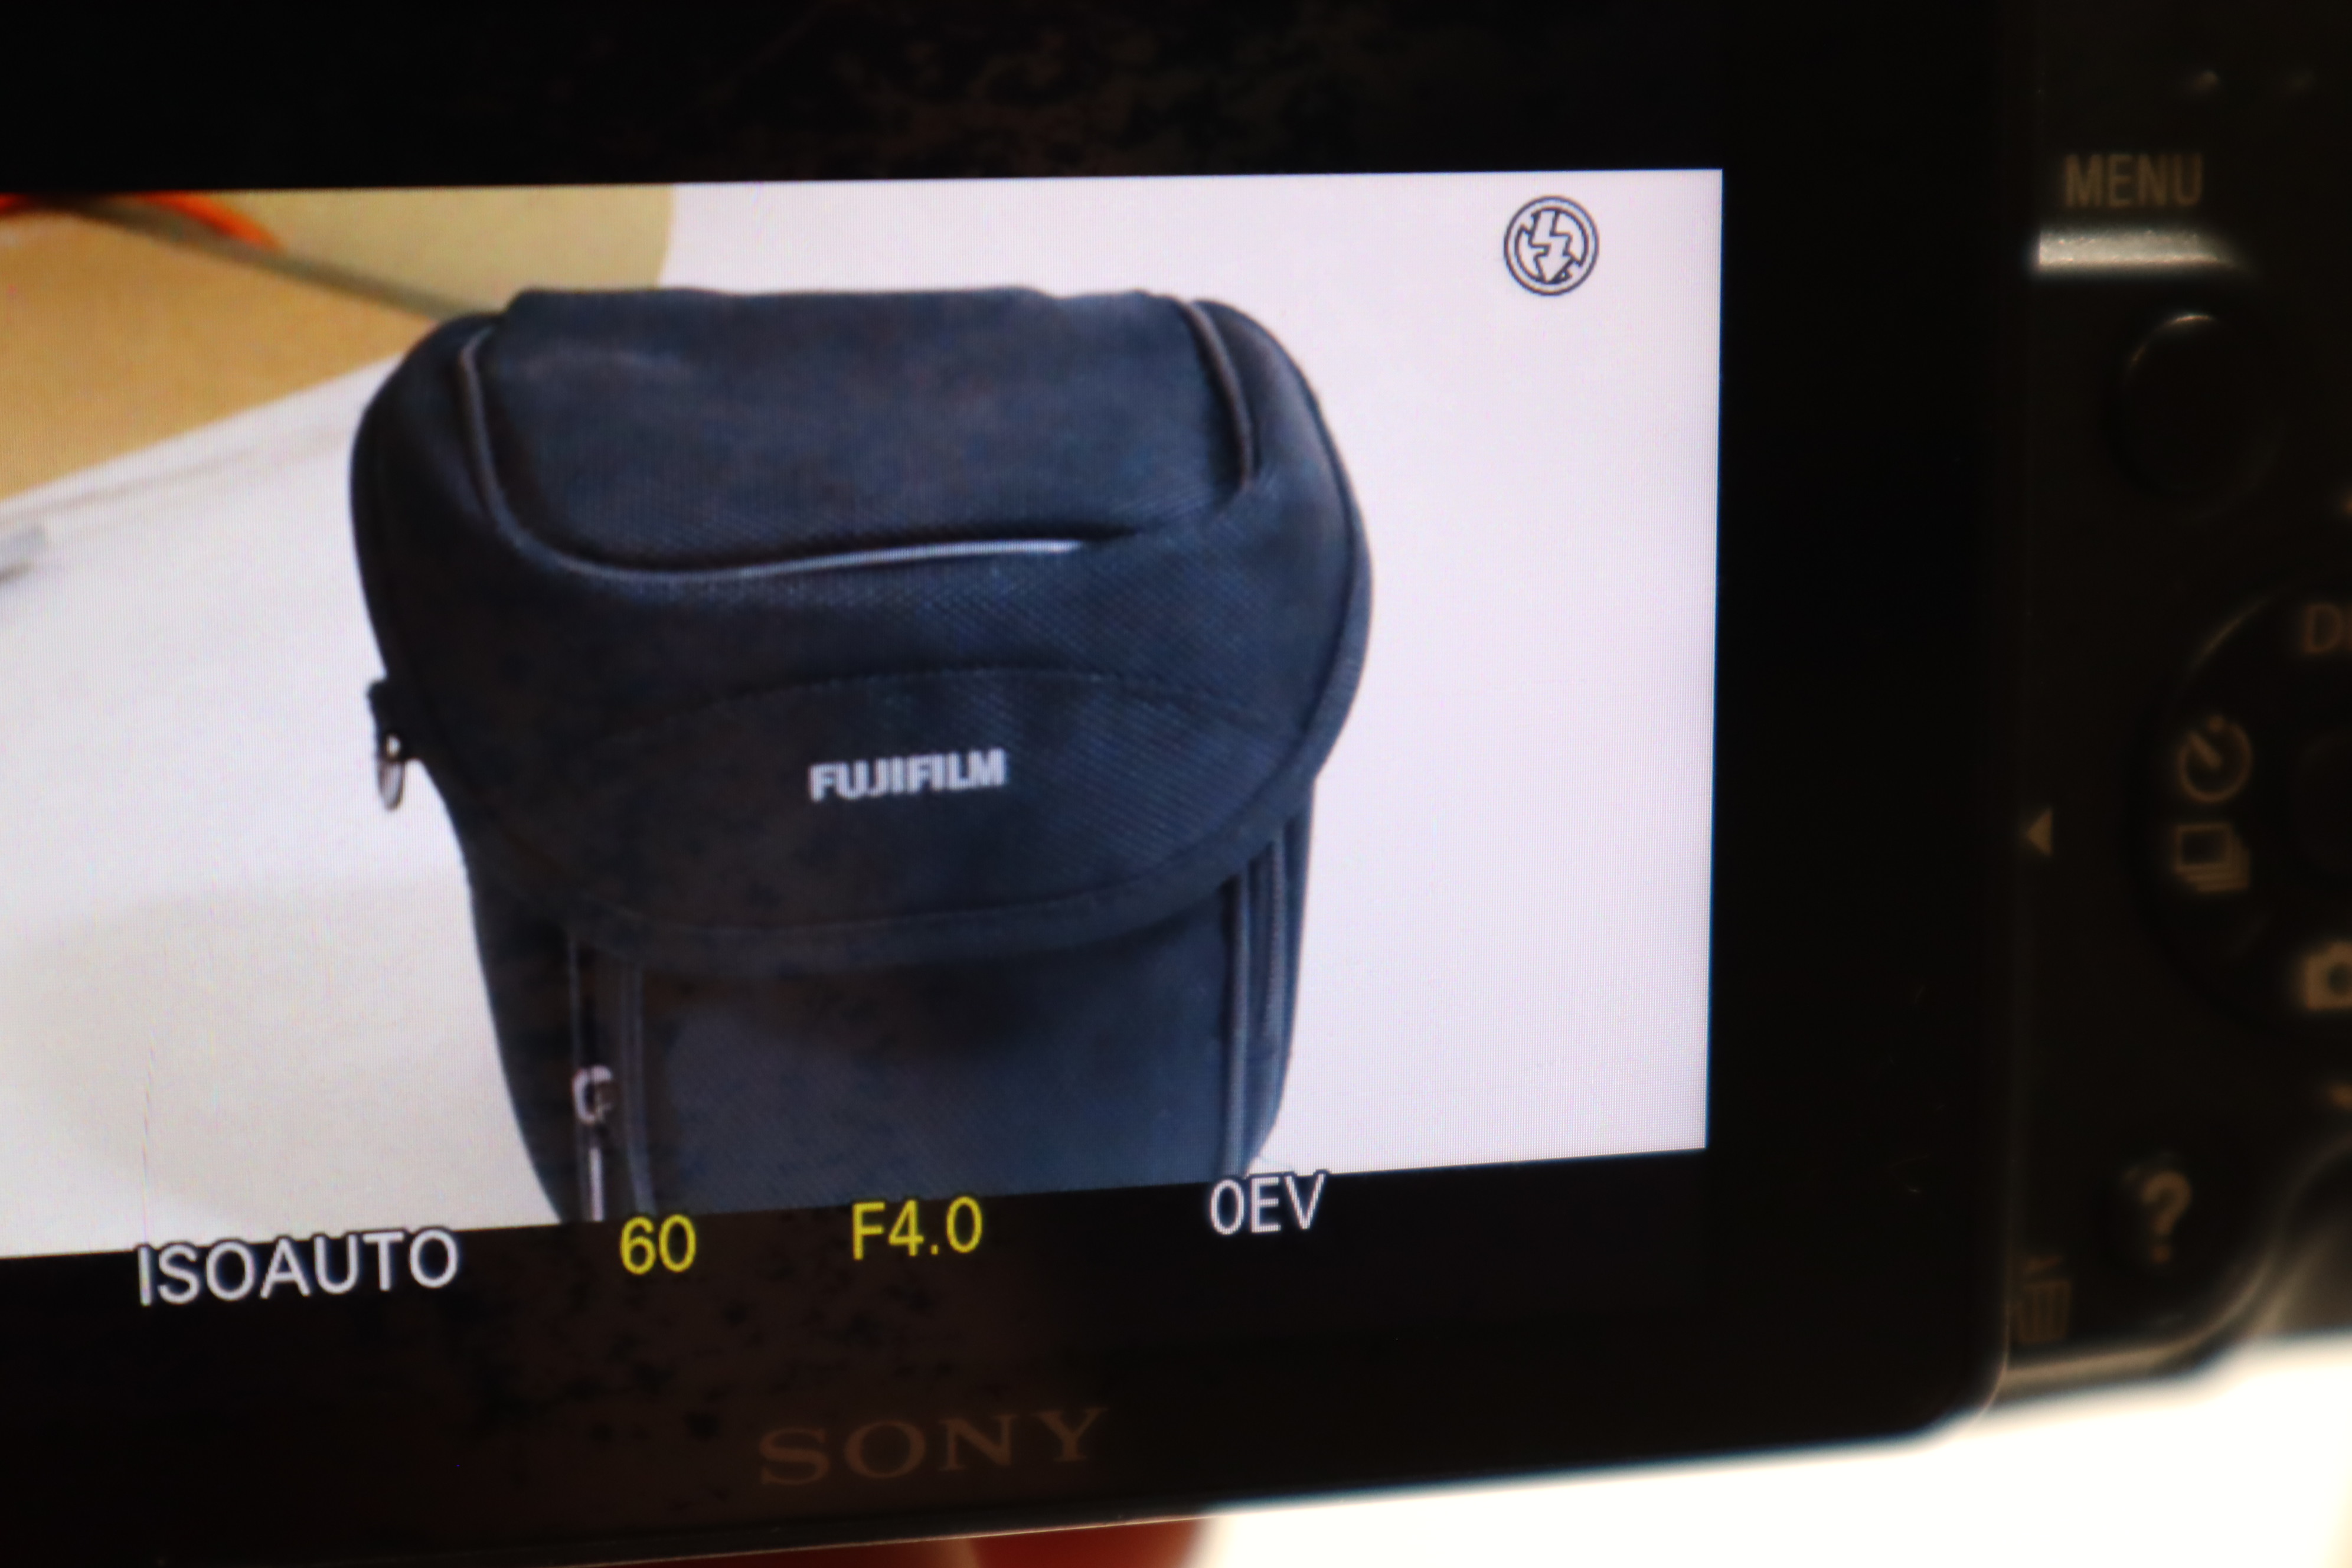 Sony 18.2 MP cámara digital con LCD de 2.7 pulgadas